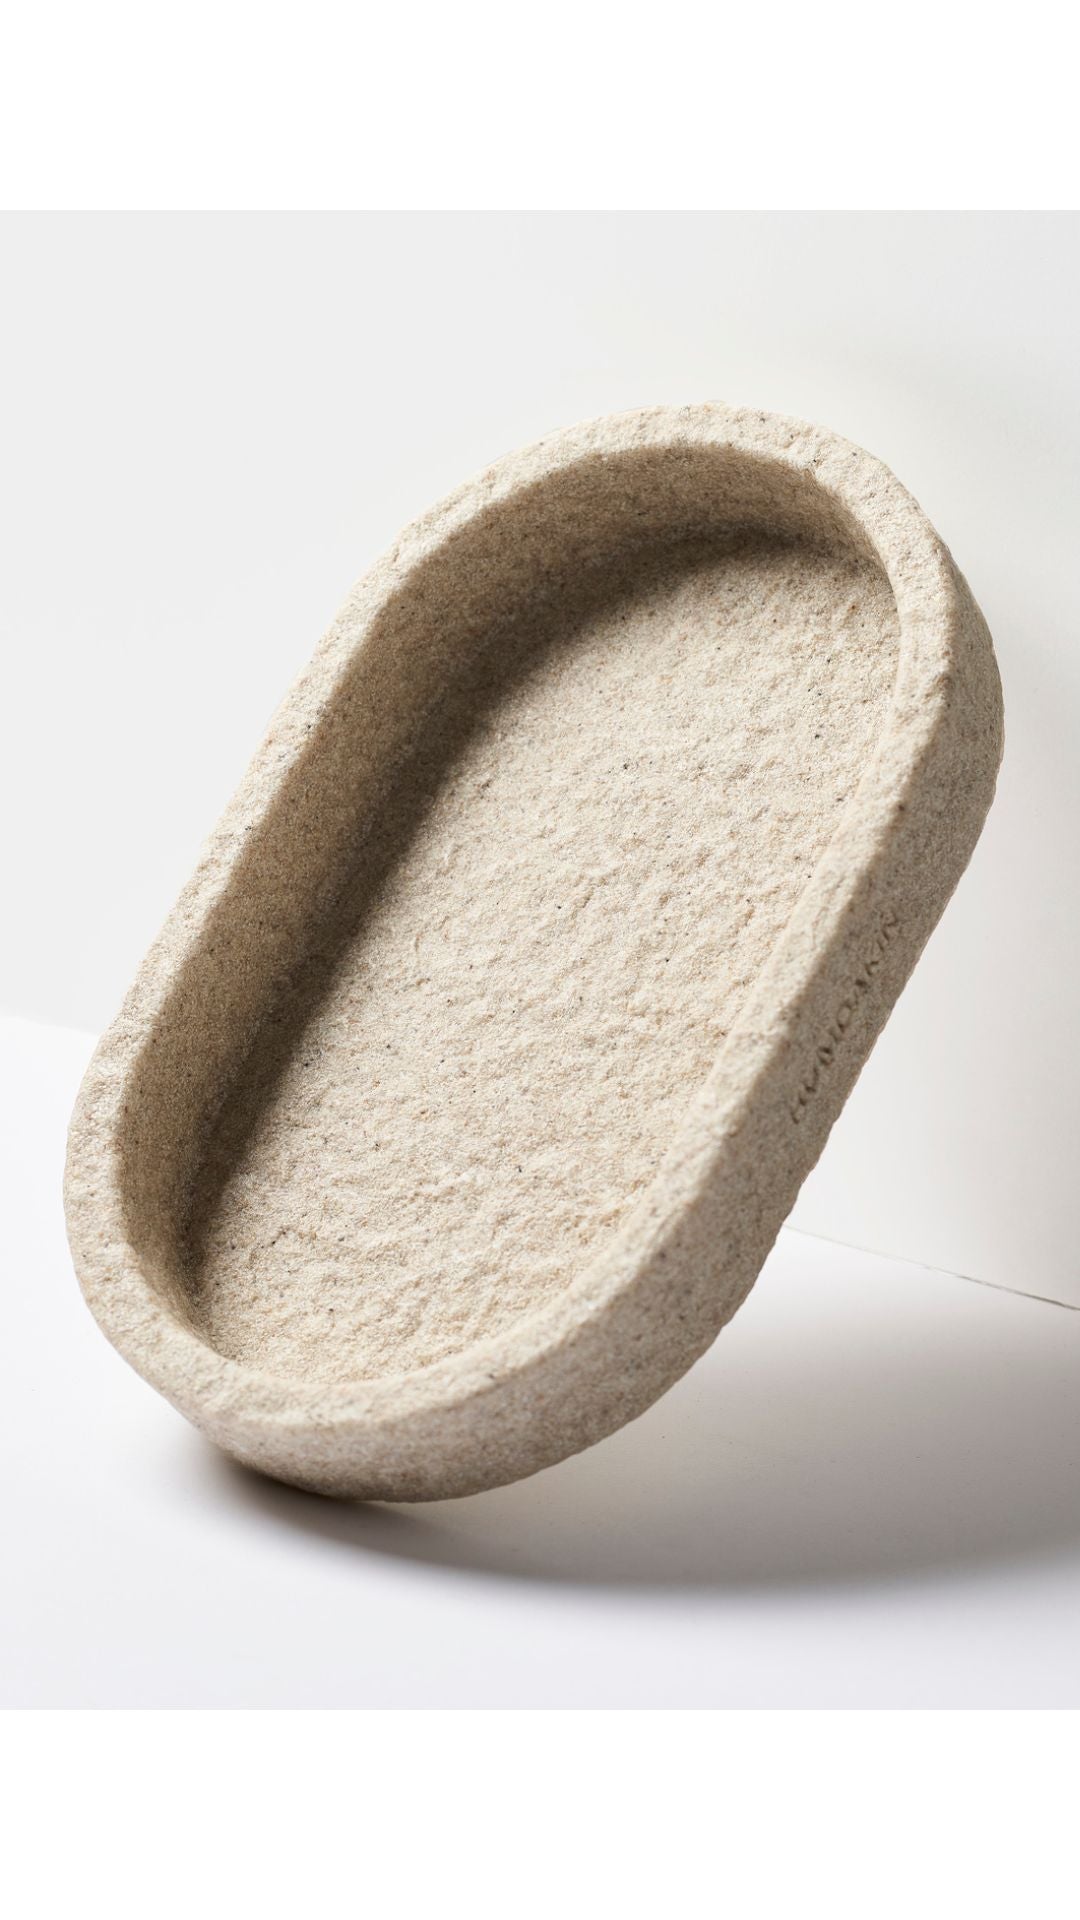 Humdakin sandstone oval tablett